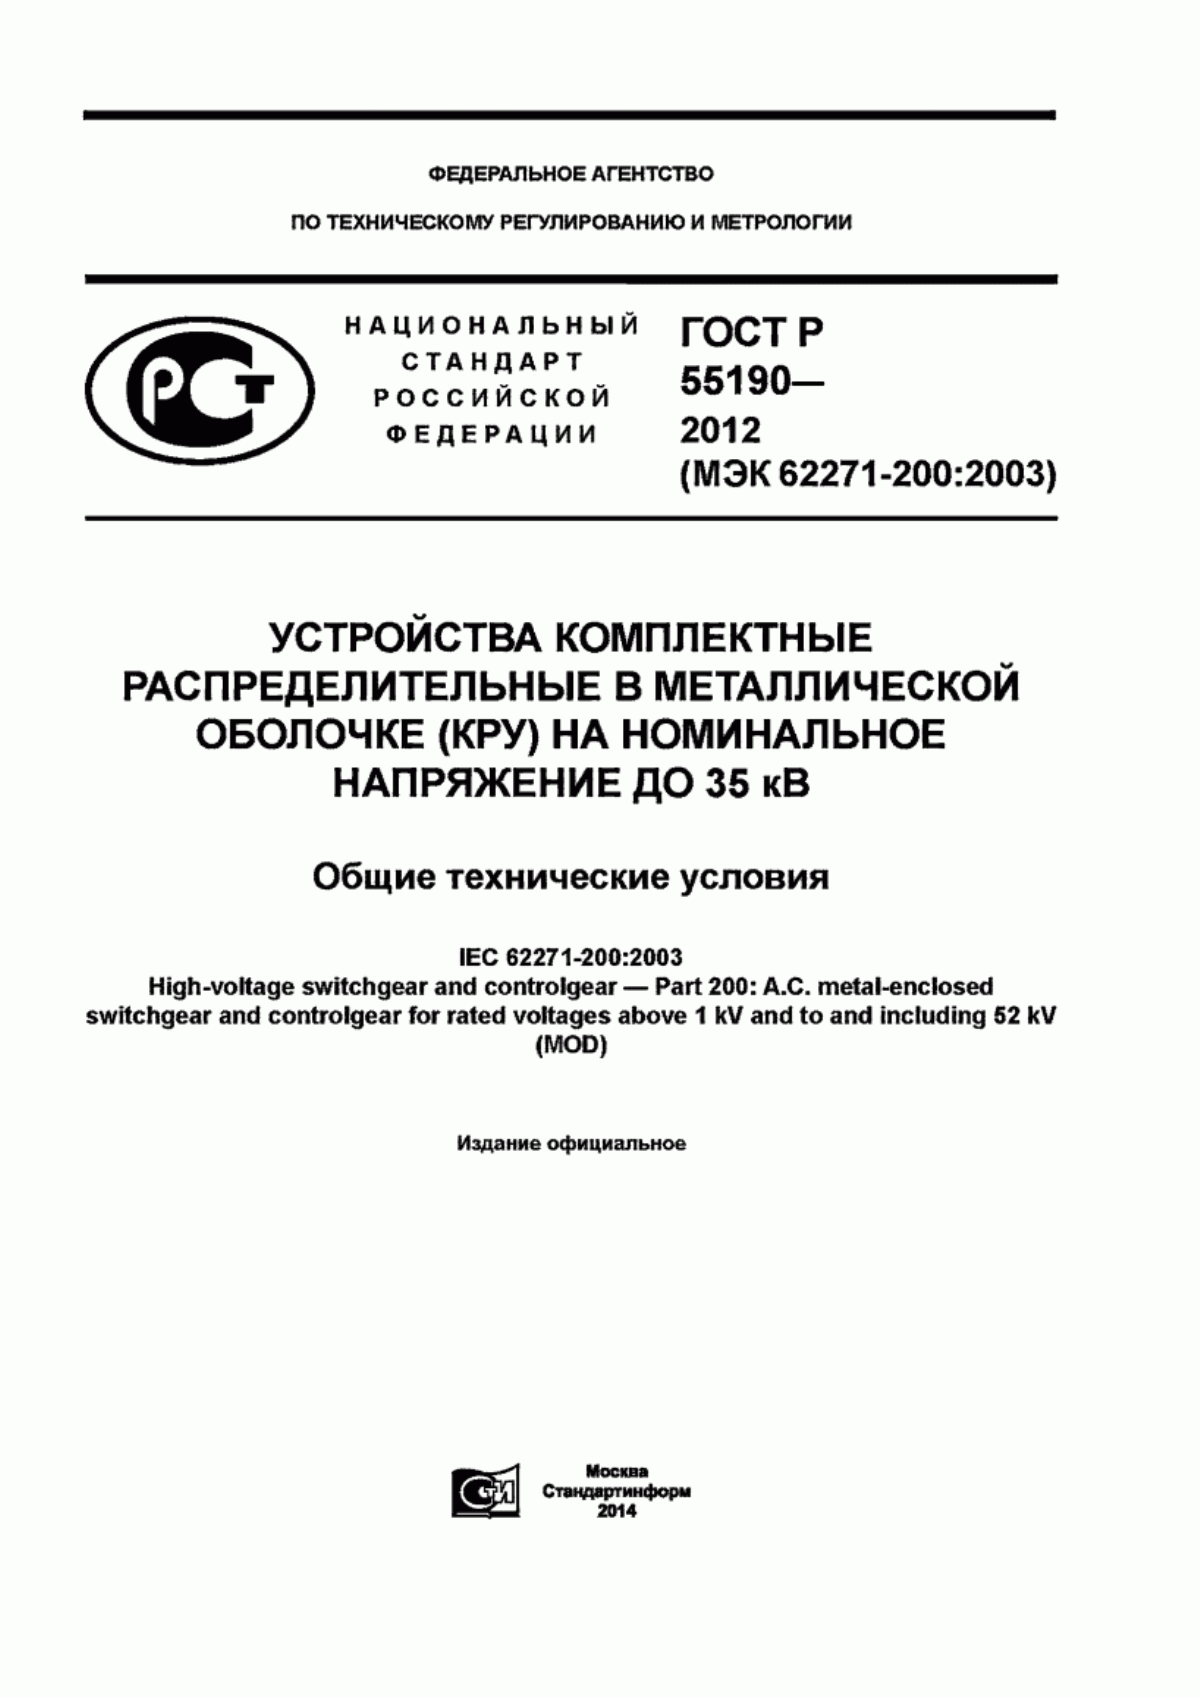 ГОСТ Р 55190-2012 Устройства комплектные распределительные в металлической оболочке (КРУ) на номинальное напряжение до 35 кВ. Общие технические условия